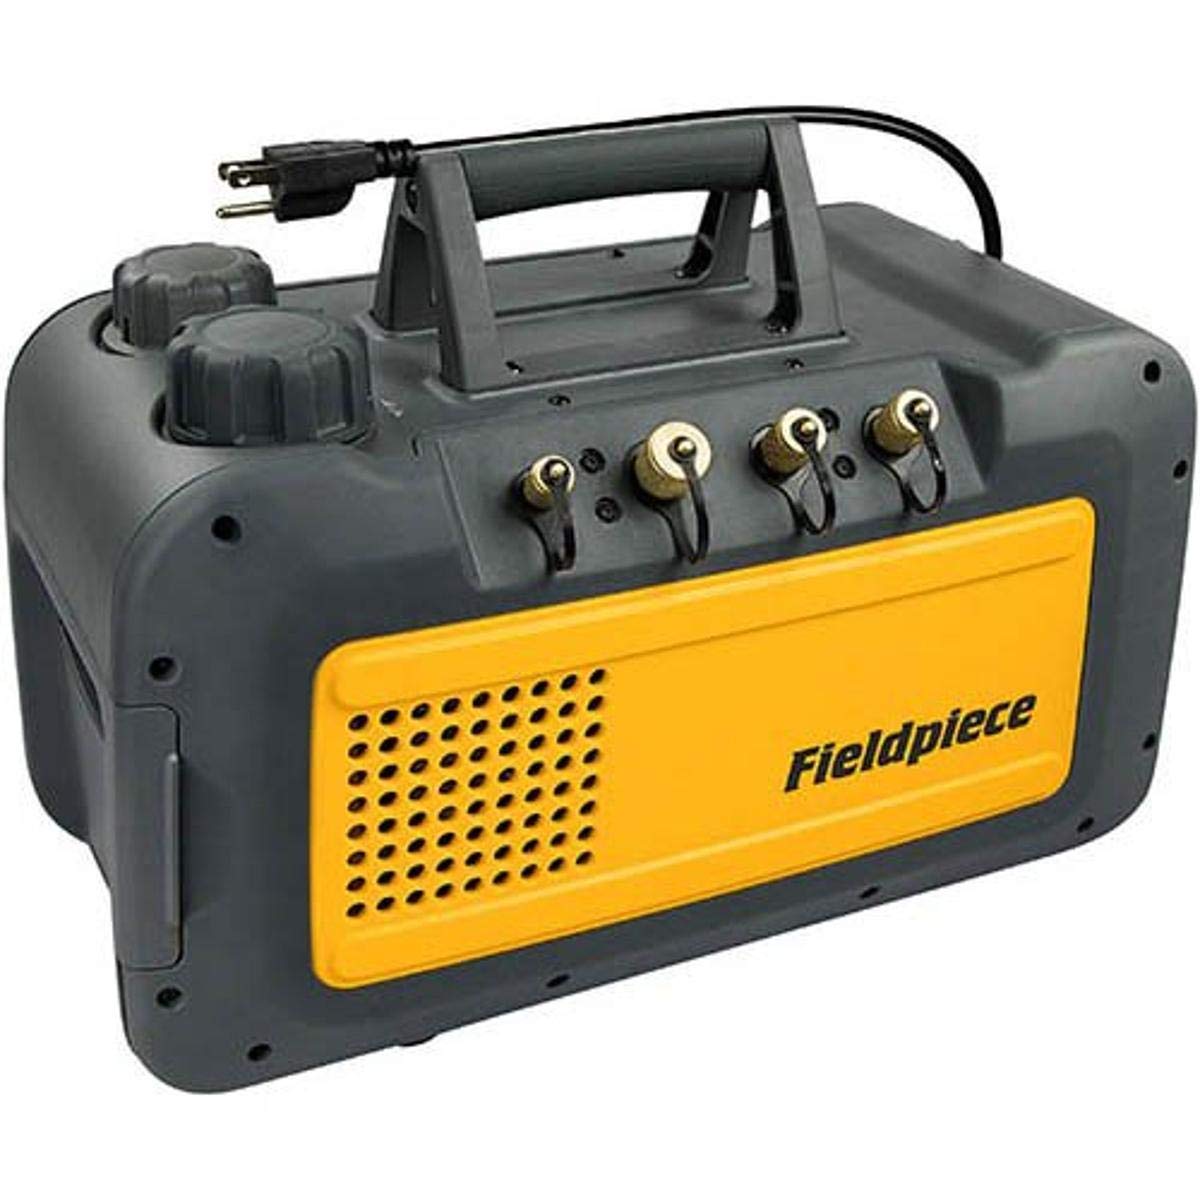 Fieldpiece Black Vp85 Two Stage 8 Cfm Vacuum Pump : Amazon.sg: Automotive